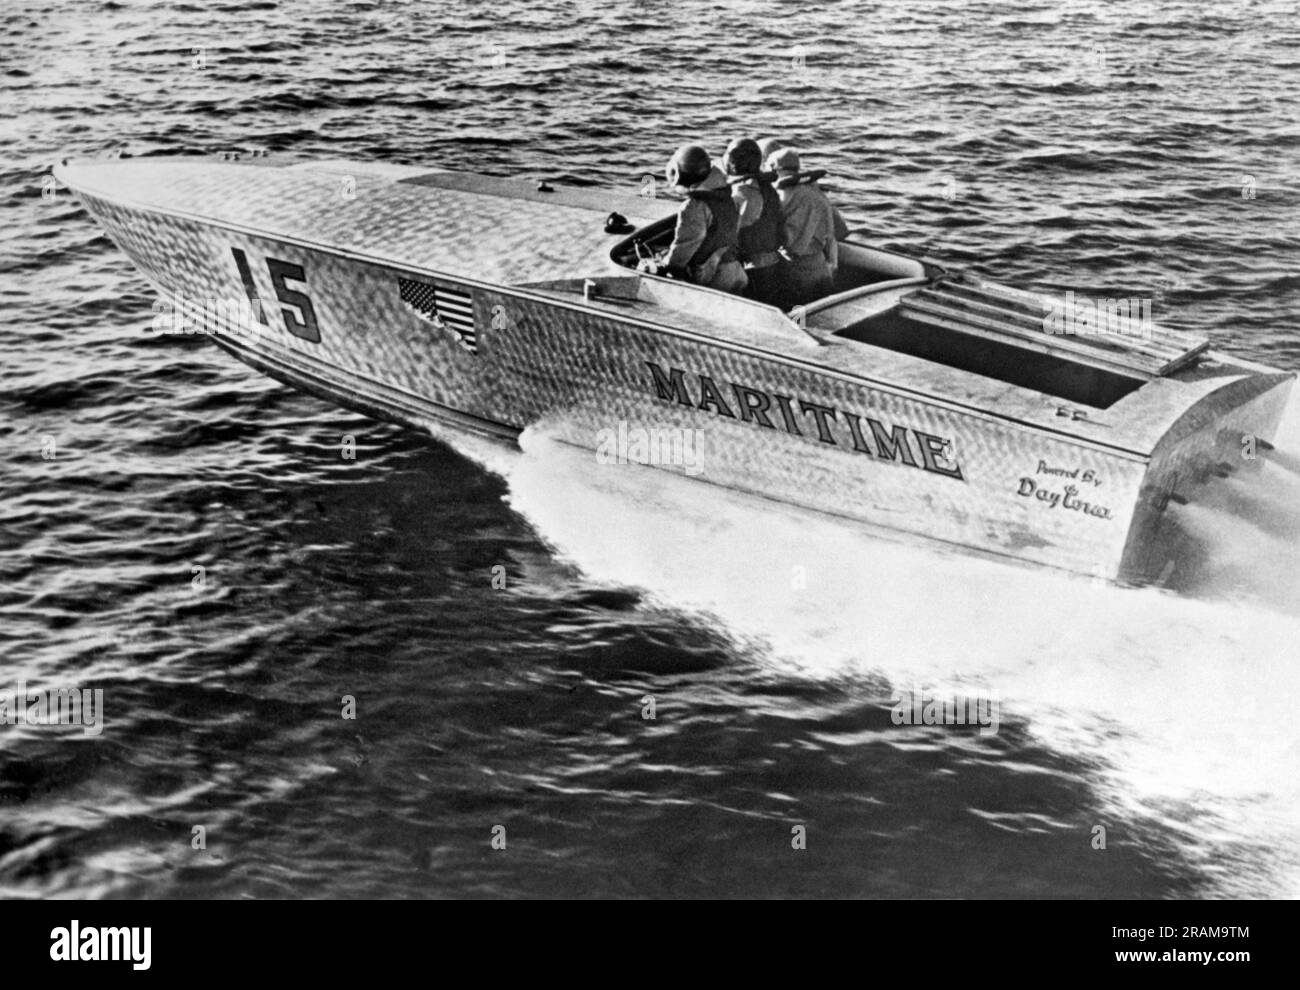 West Palm Beach, Florida 14. Juni 1965 das Speernasenboot aus Aluminium gewann den 180 km langen West Palm Beach zum Lucaya-Freeport Gateway Marathon. 39 Boote starteten, aber nur 22 beendeten das Rennen. Stockfoto